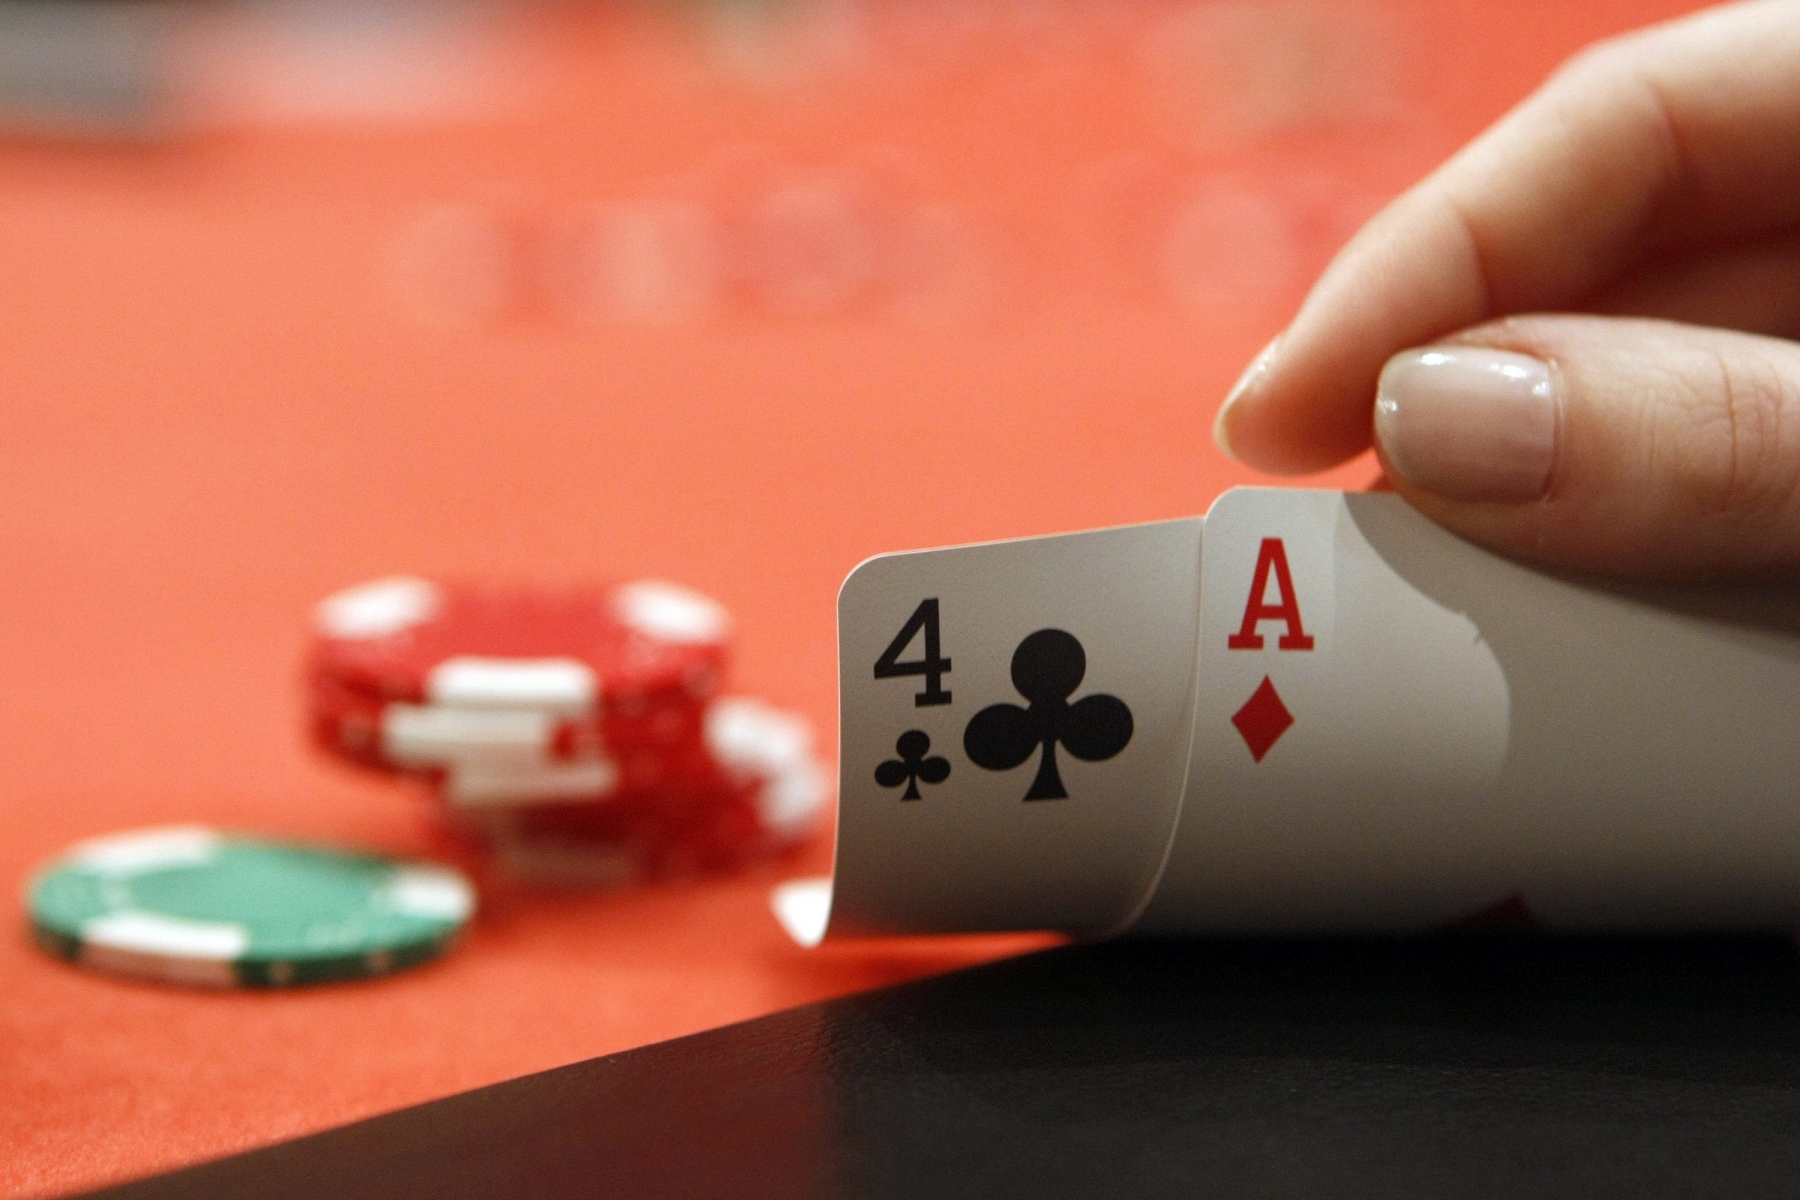 ZUR STUDIE DER SPIELBANKENKOMMISSION UEBER SPIELSUCHT STELLEN WIR IHNEN AM FREITAG, 26. JUNI 2009 FOLGENDES ARCHIVBILD ZUR VERFUEGUNG - Eine Teilnehmerin schaut sich am 26. Januar 2008 an einem Pokertournier in Lausanne seine Handkarten an. 253 Spieler nehmen am "Texas hold 'em"-Pokertournier ohne buy-in teil, das im Cull Club stattfindet. (KEYSTONE/Dominic Favre)

A participant checks her pocket cards at a poker tournament in Lausanne, Switzerland, pictured on January 26, 2008. 253 players participate at the "Texas Hold 'em"-tournament without buy-in at the Cull Club. (KEYSTONE/Dominic Favre)

Une participante au tournoi de poker organise par le VSC Poker Club ce samedi 26 janvier 2008 a Lausanne. 253 joueurs se sont inscrits et ont participe a ce tournoi sans buy-in au Cull Club de Lausanne. (KEYSTONE/Dominic Favre)